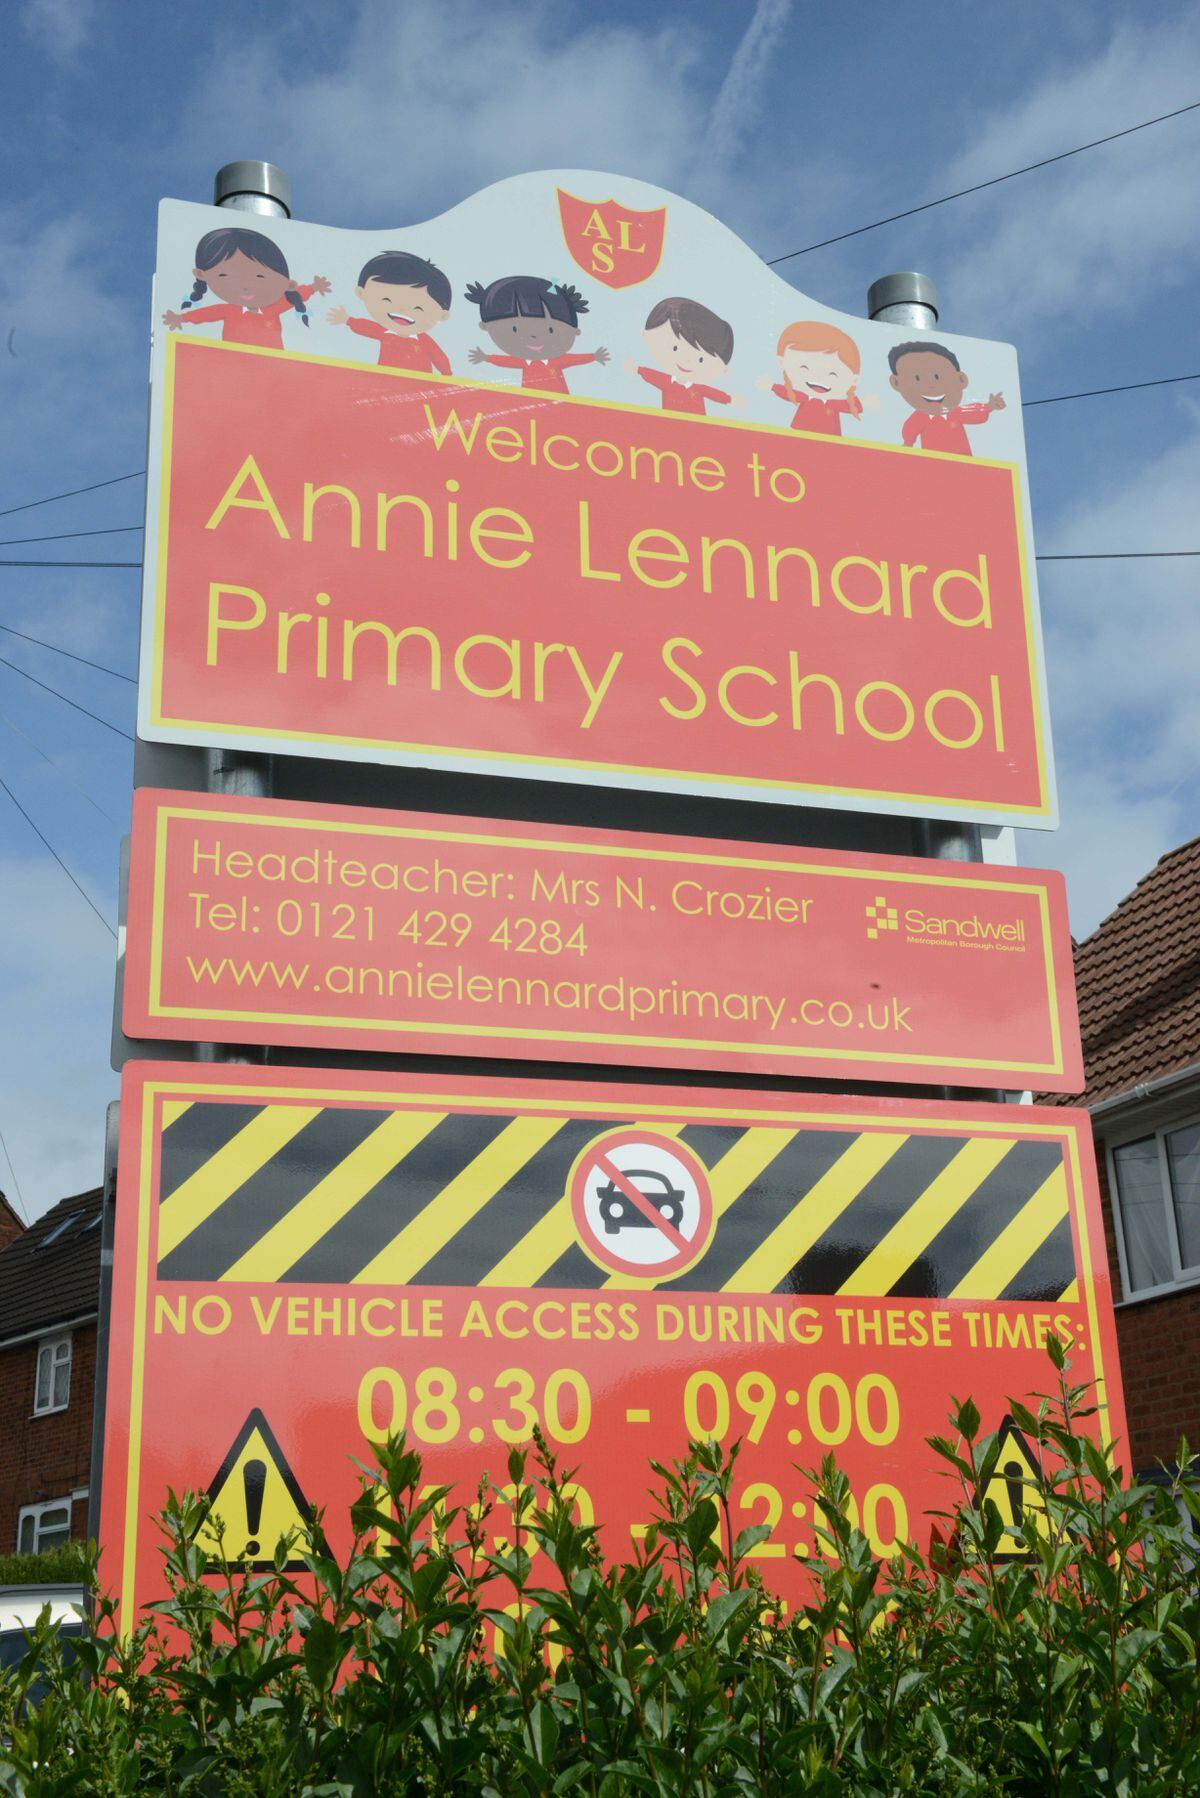 Annie Lennard Primary School.